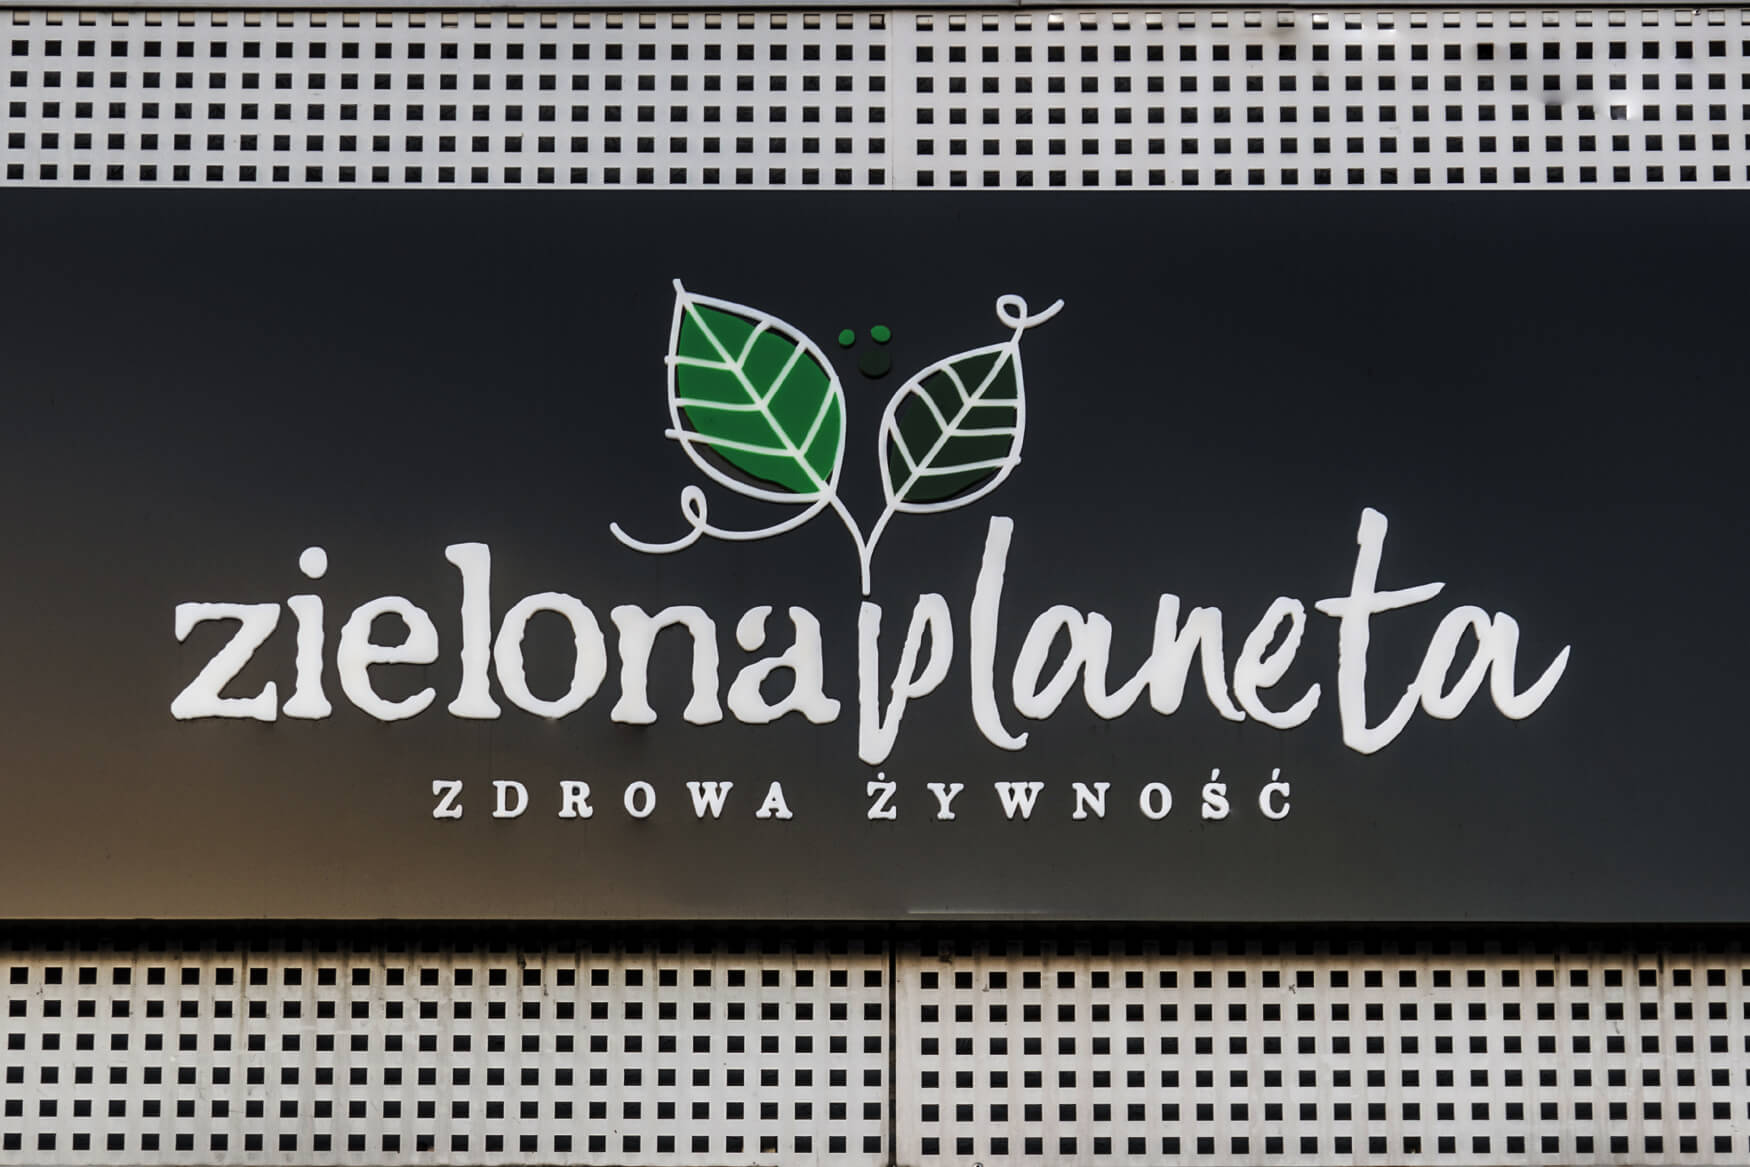 grüner Planet - Zielona Planeta - beleuchtete Werbekassette mit Buchstaben und räumlichem Logo